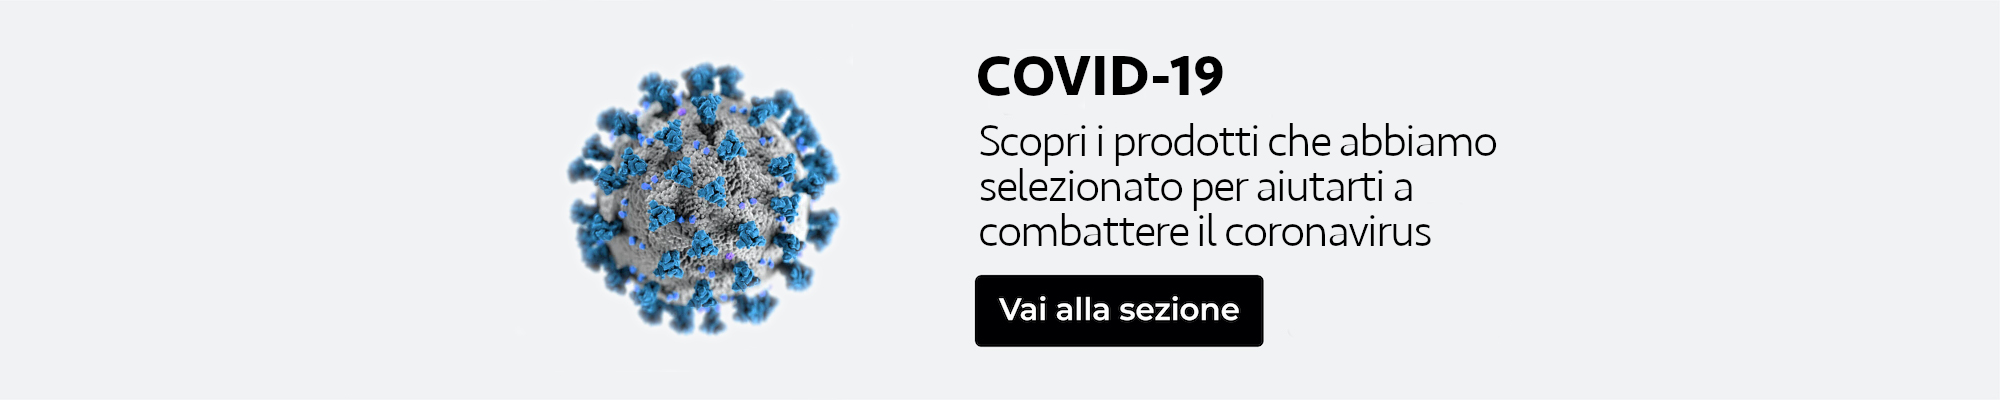 Covid-19 igienizzante mani, distanziatori, sanificante - igienizzante -disinfettante ambienti - pavimenti, termometri, pannelli, mascherine